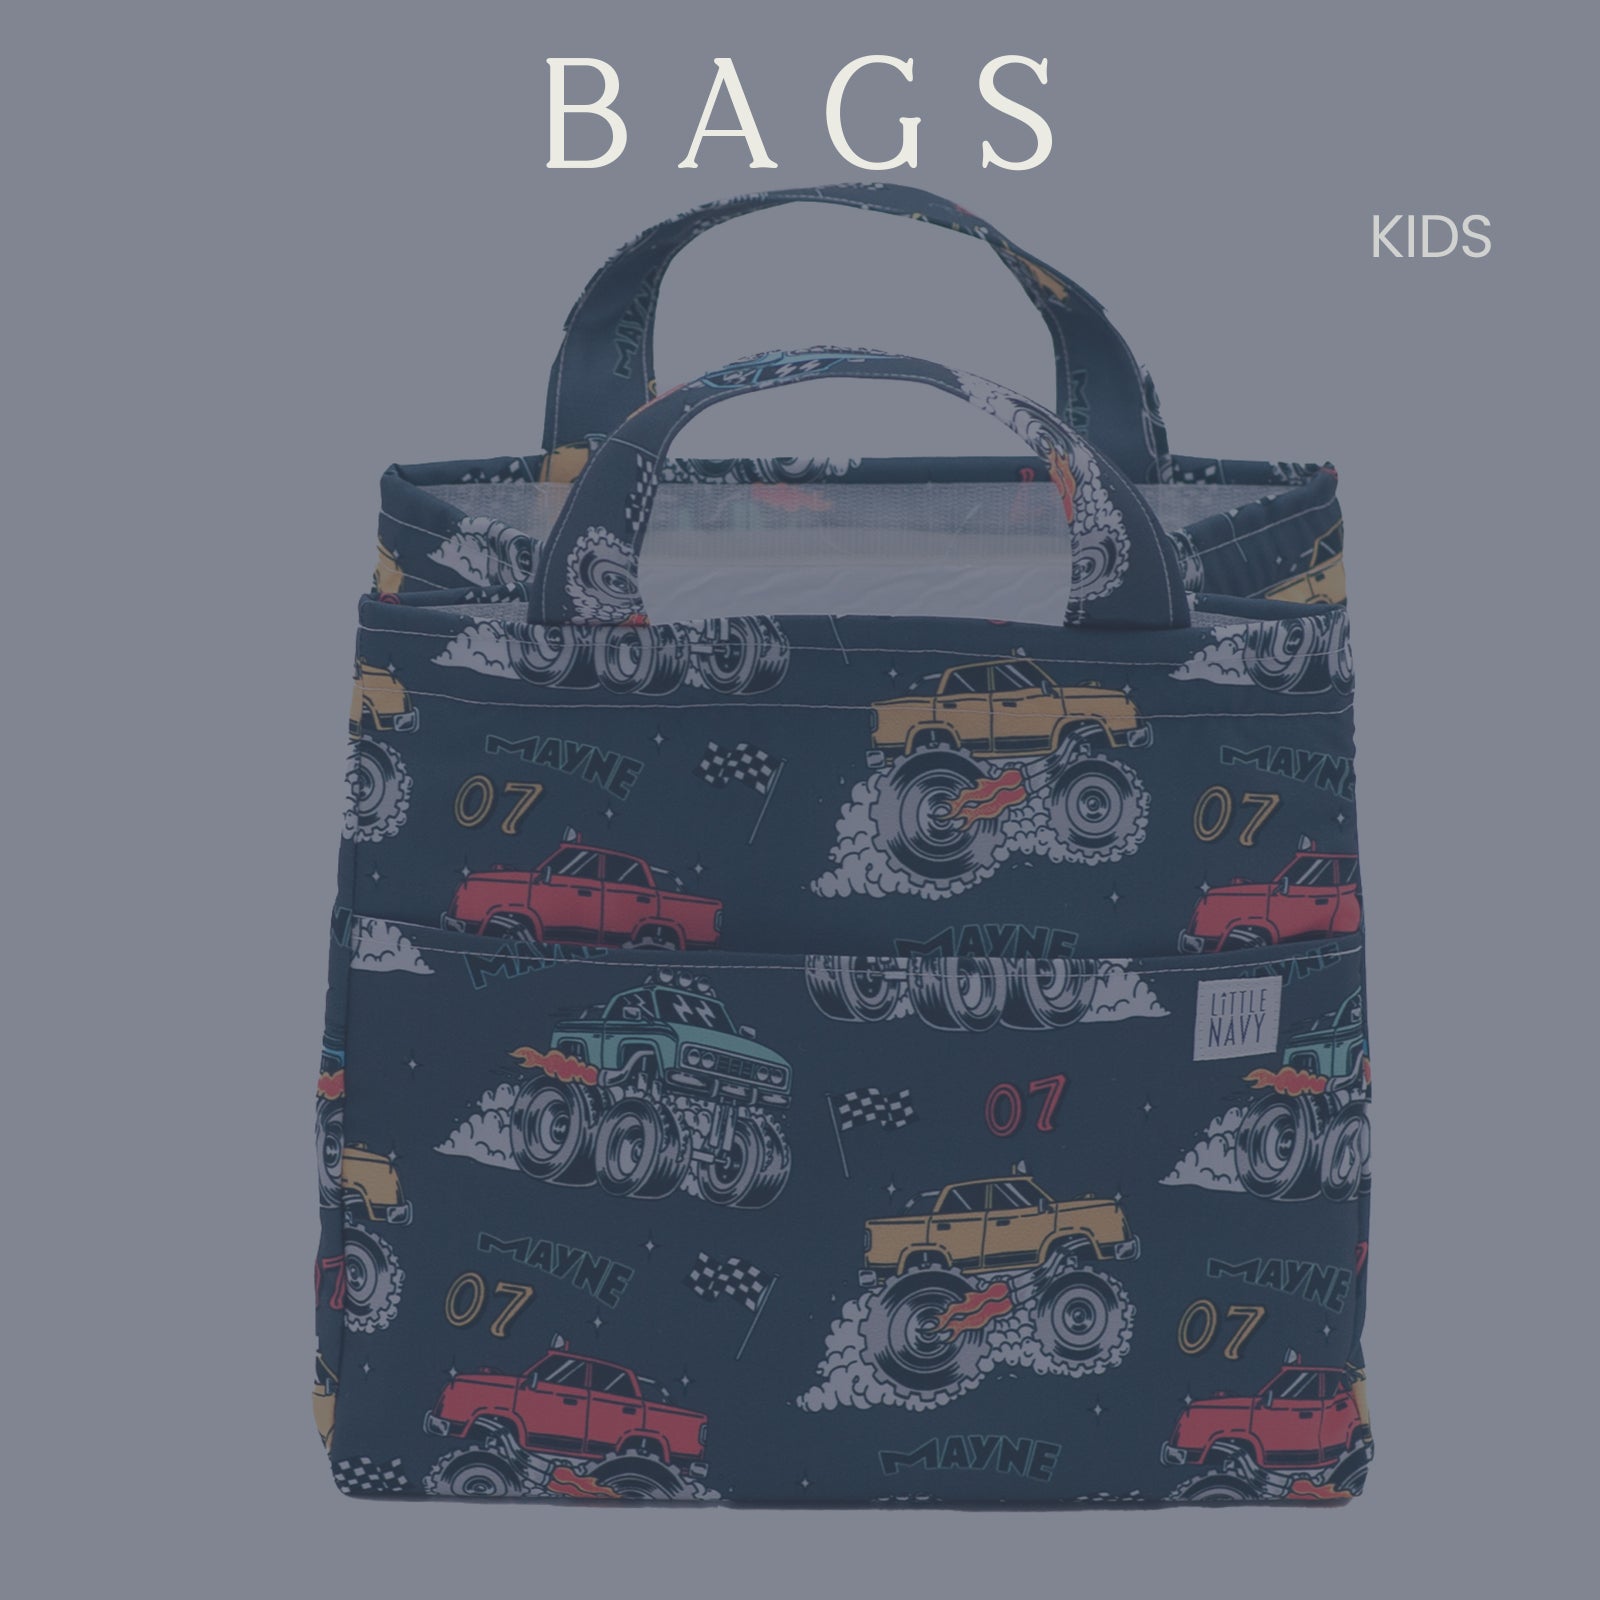 Kids - Bags